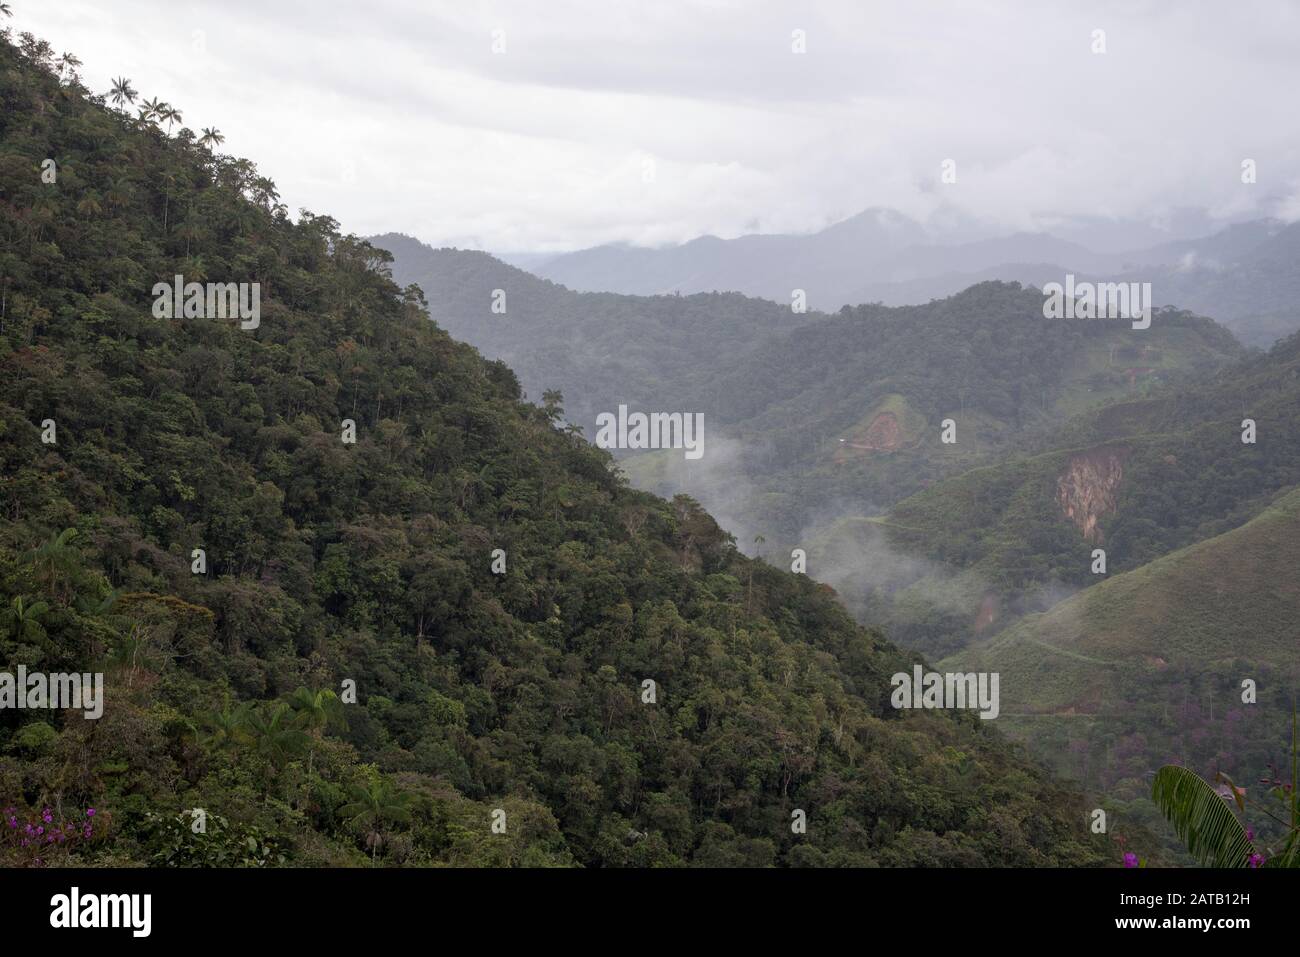 Urwald im Bombuscaro-Gebiet im tropischen Podocarpus-Nationalpark in den Anden auf 1000 Meter Höhe über dem Meeresspiegel mit Landnutzung in der Nähe. Stockfoto